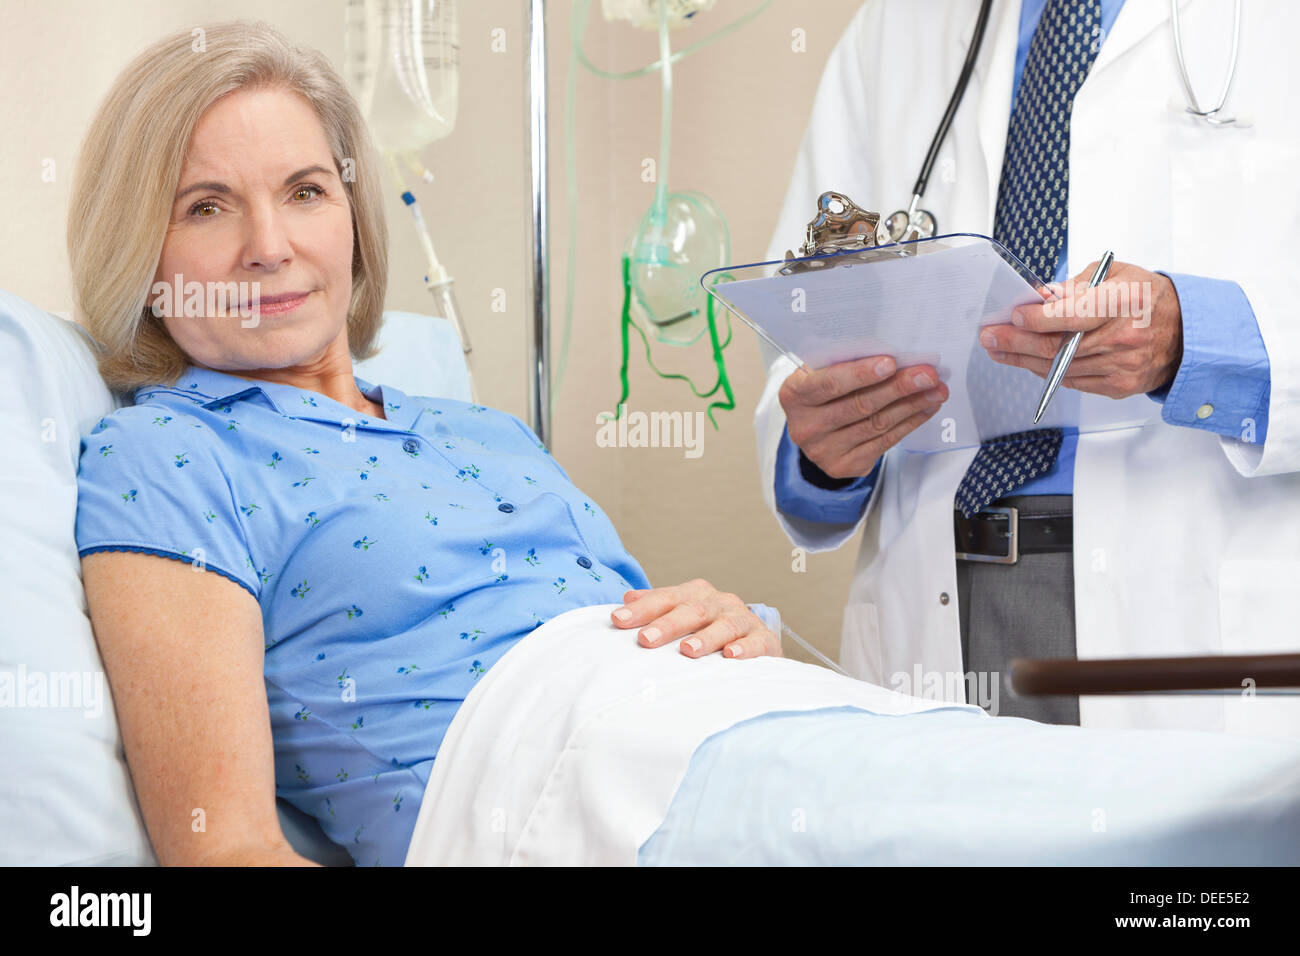 Femme femme Senior patient dans un lit d'hôpital, soigné par un infirmier ou un médecin Banque D'Images